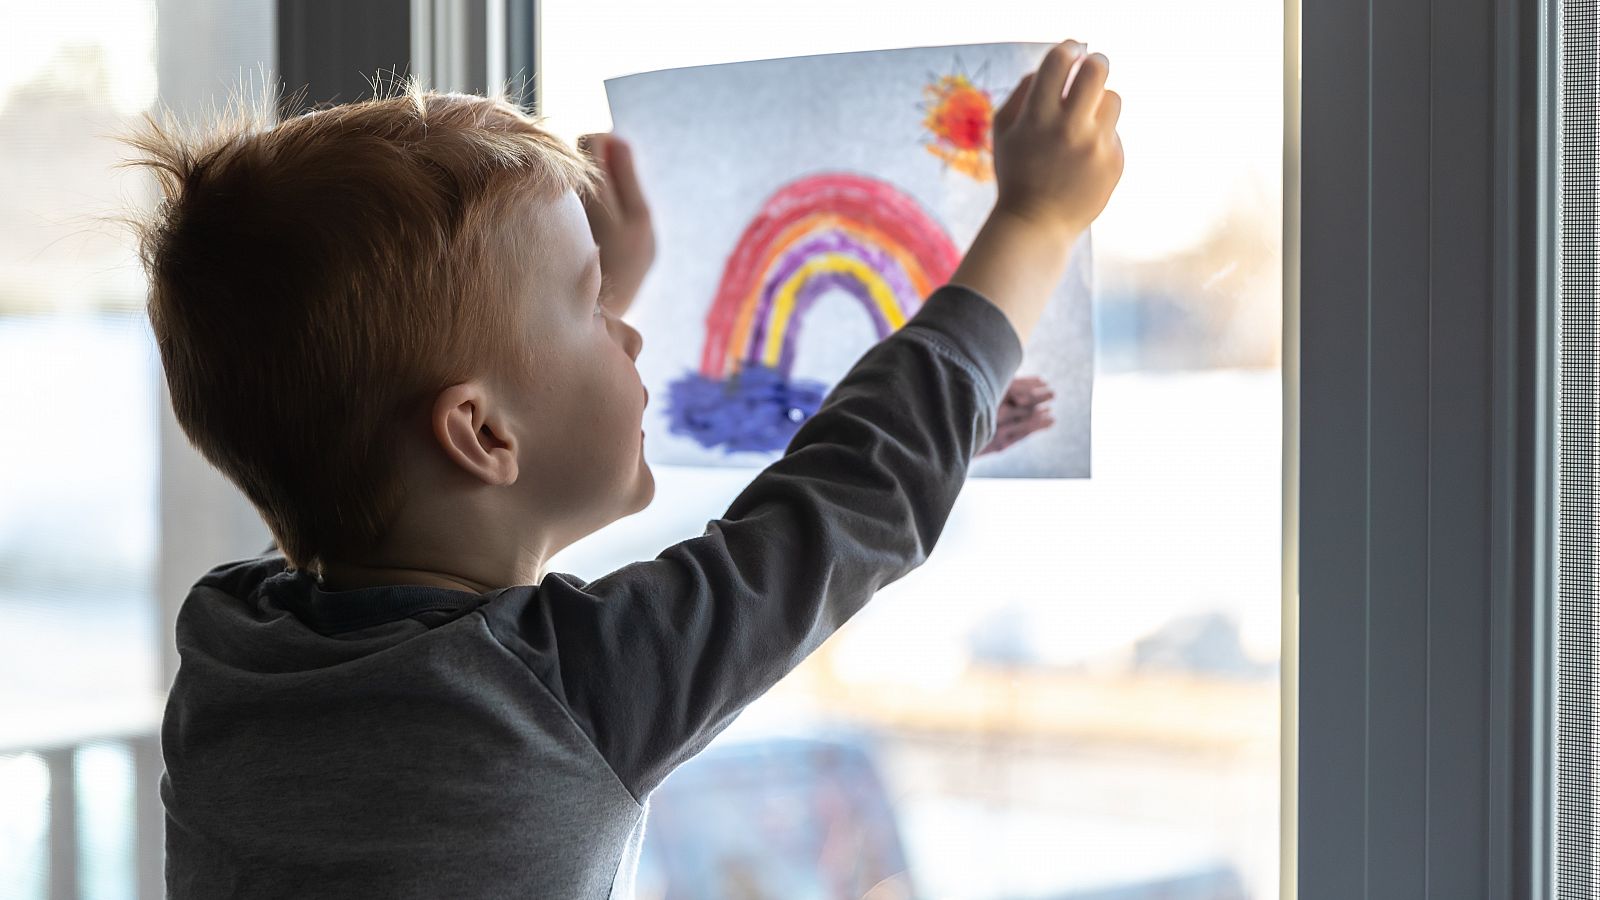 Un niño cuelga un dibujo con un arco iris durante el confinamiento domiciliario.